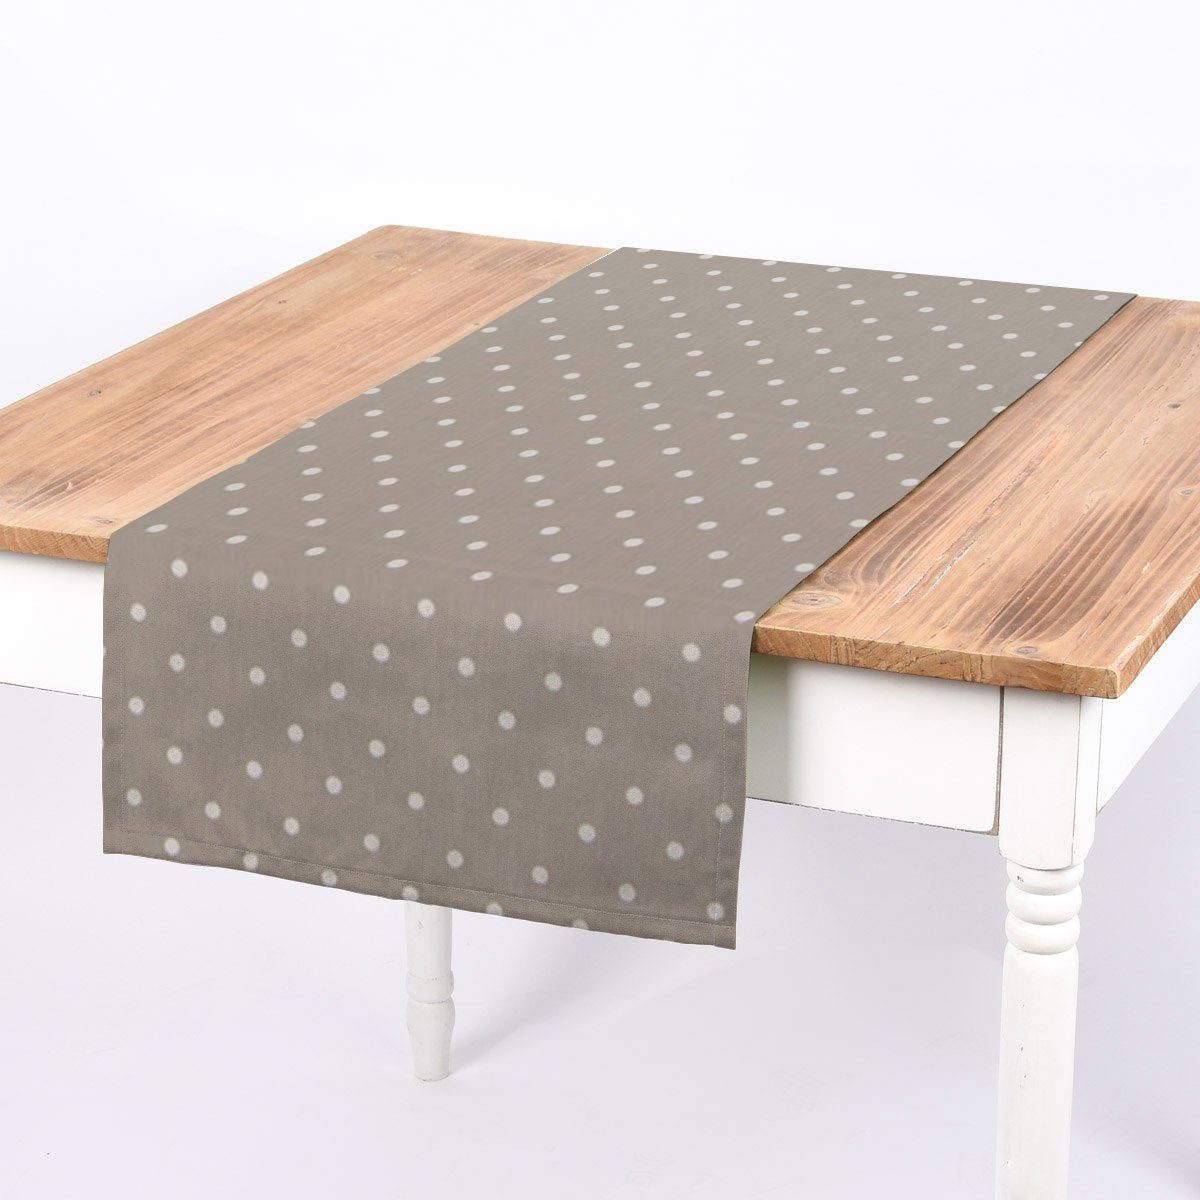 SCHÖNER LEBEN. Tischläufer SCHÖNER LEBEN. Tischläufer Full Stop Punkte grau weiß 40x160cm, handmade | Tischläufer